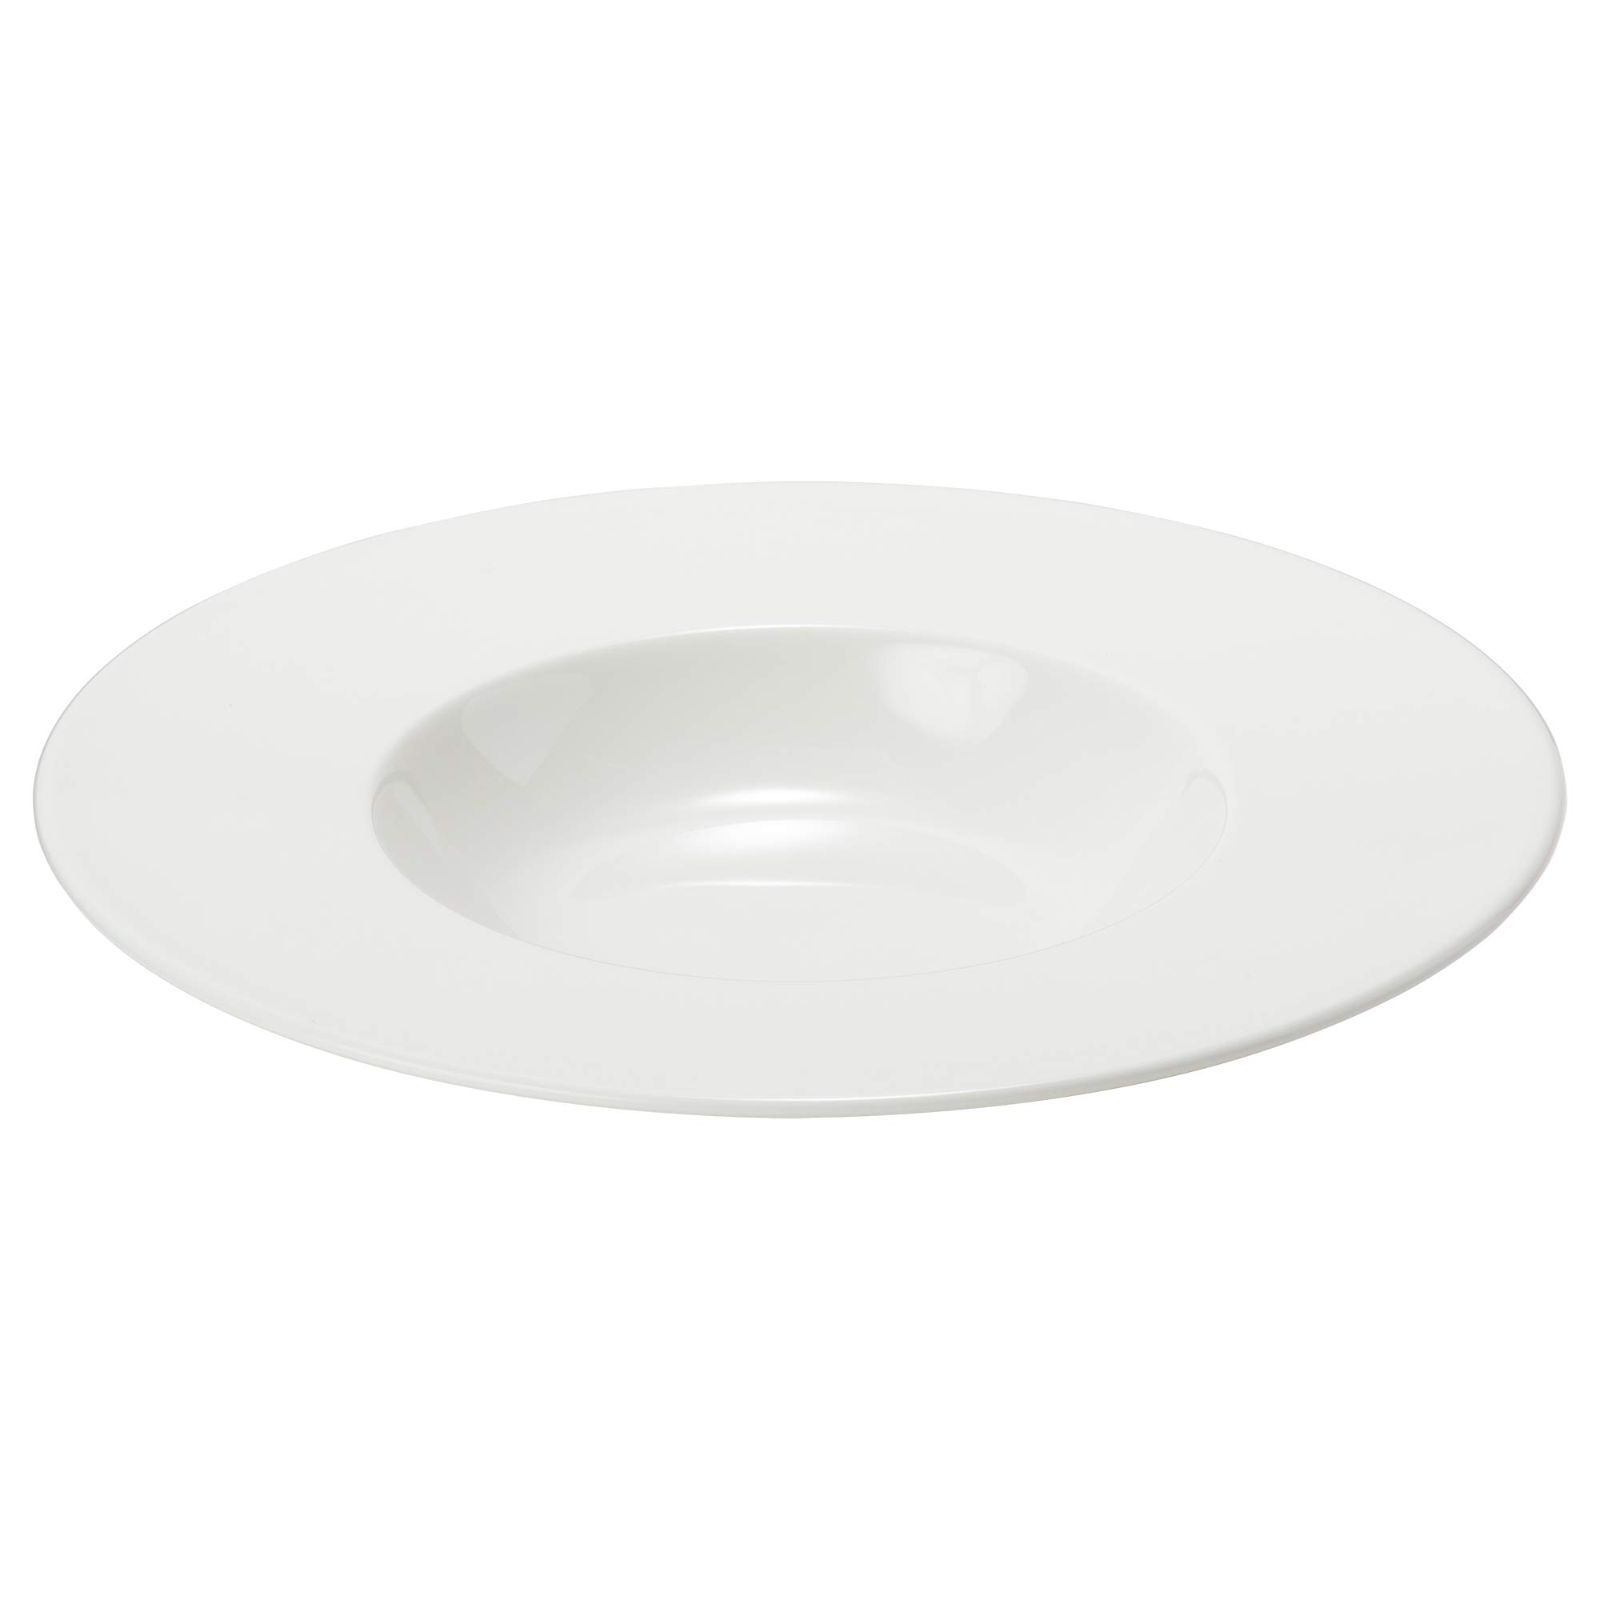 新着商品】プレート 皿 プロスタイル 25cm ホワイト シンプル リム